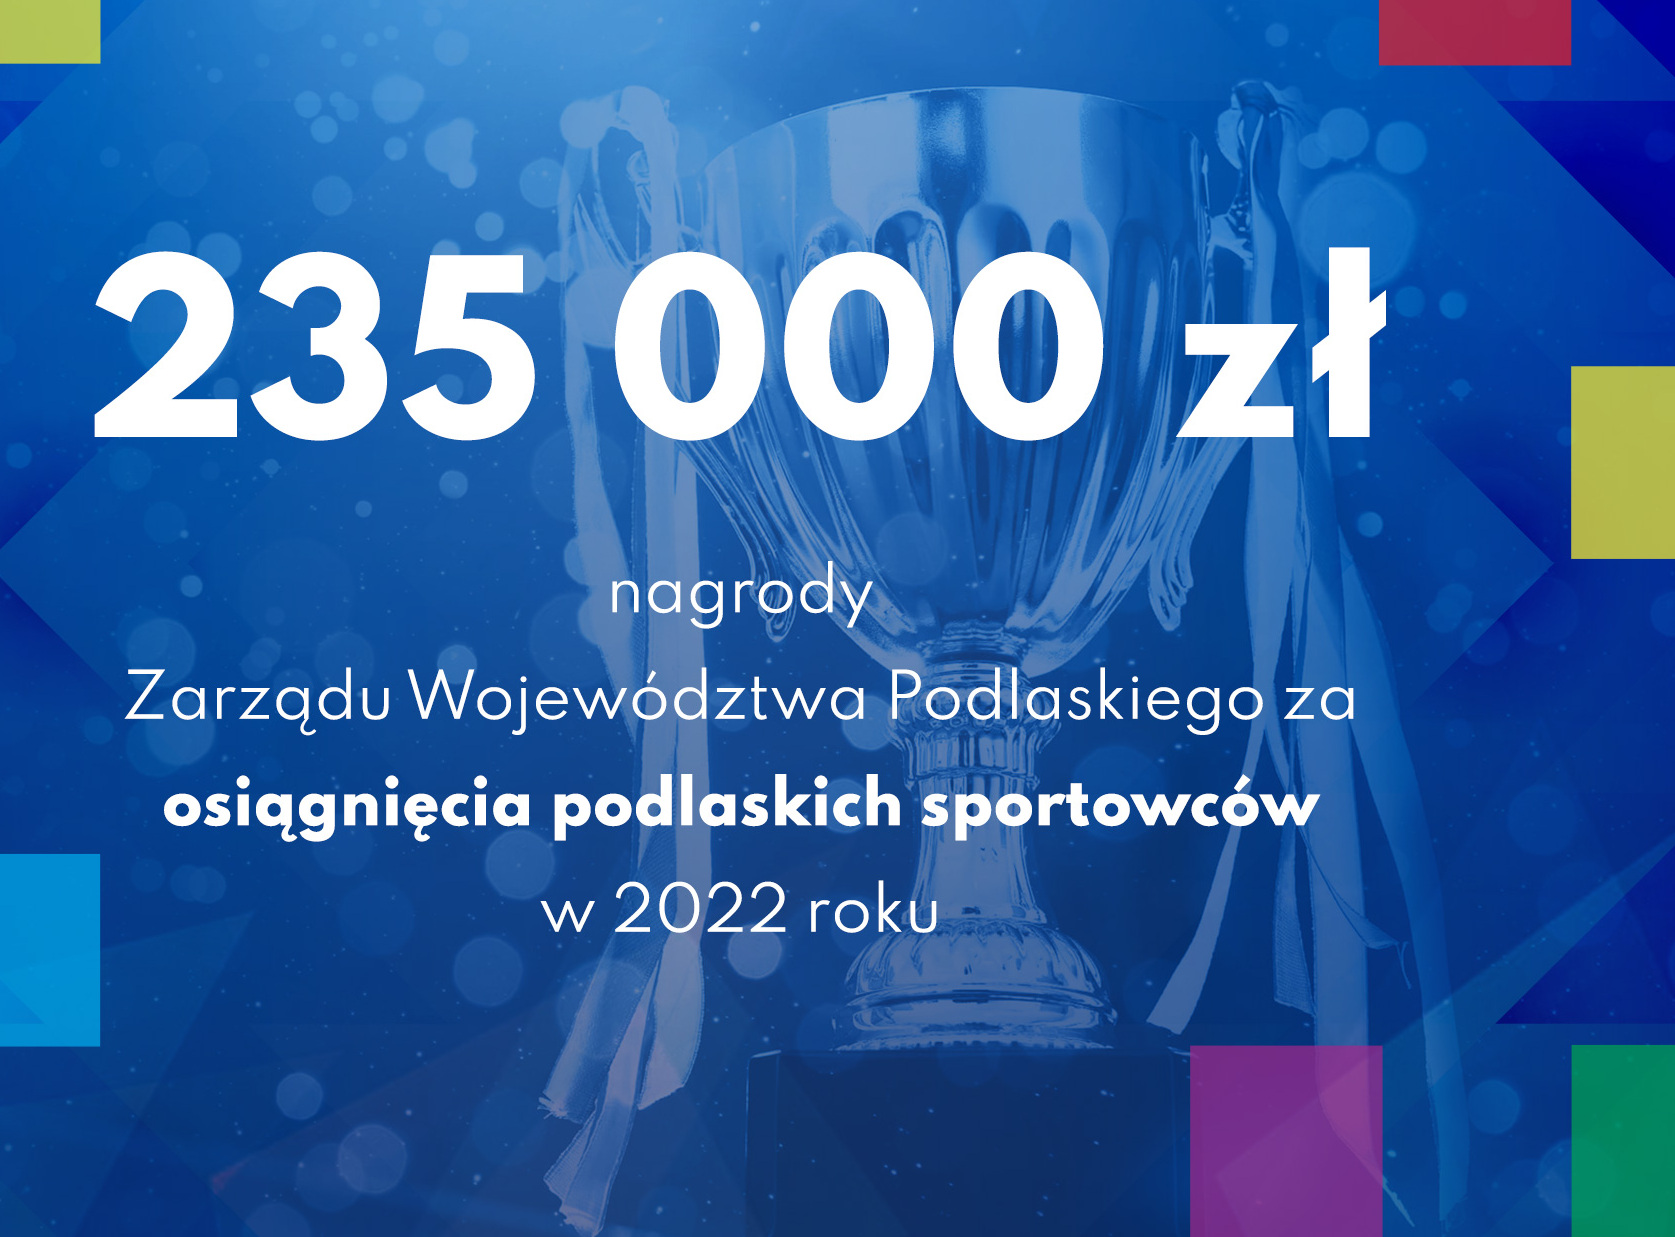 Nagrody za osiągnięcia sportowe w 2022 roku